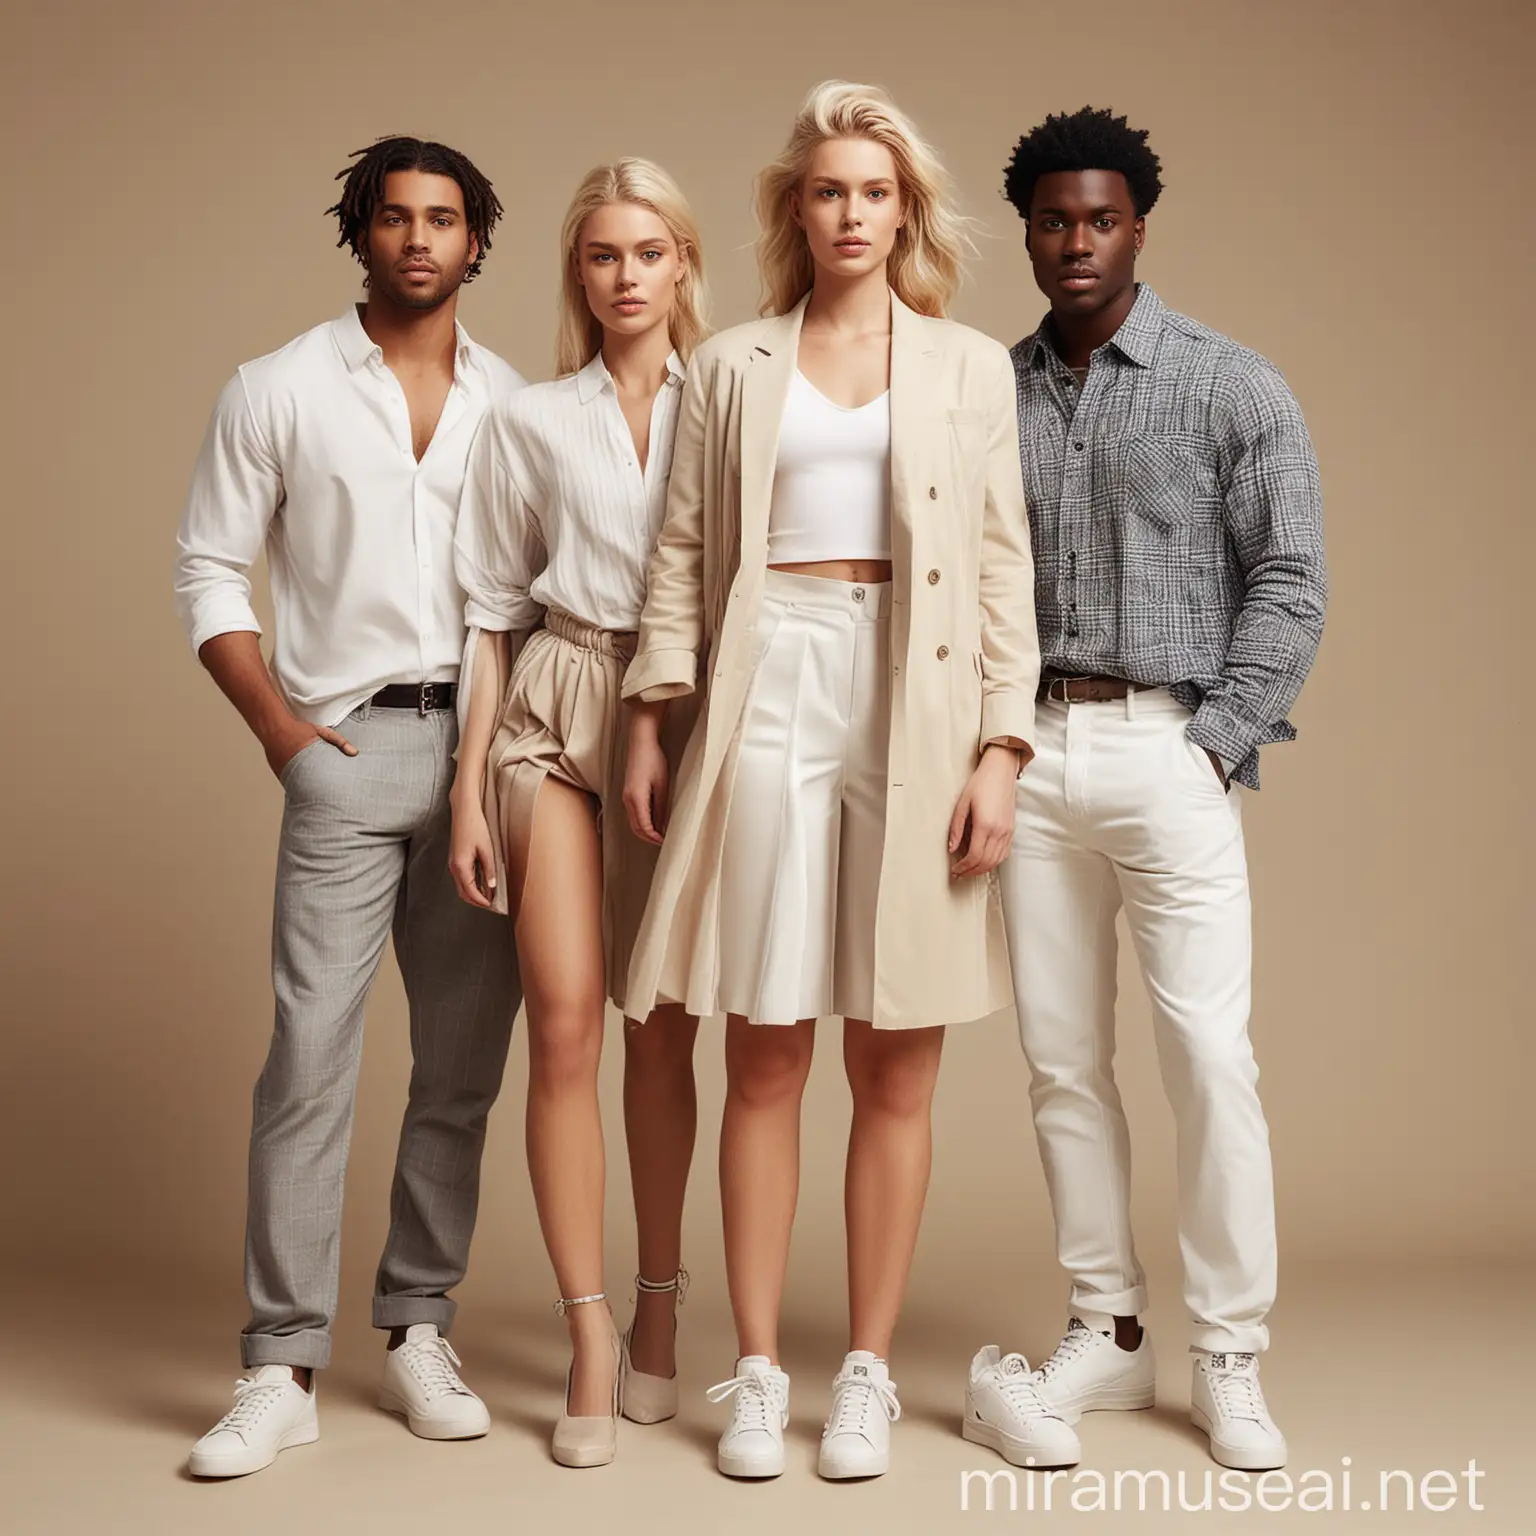 Générer une image de modèles montrant 4 personnes dont un homme noir, une femme blanche et un homme blanc et une femme blanche . Ils posent pour une marque de mode du nom de Dex Boutique